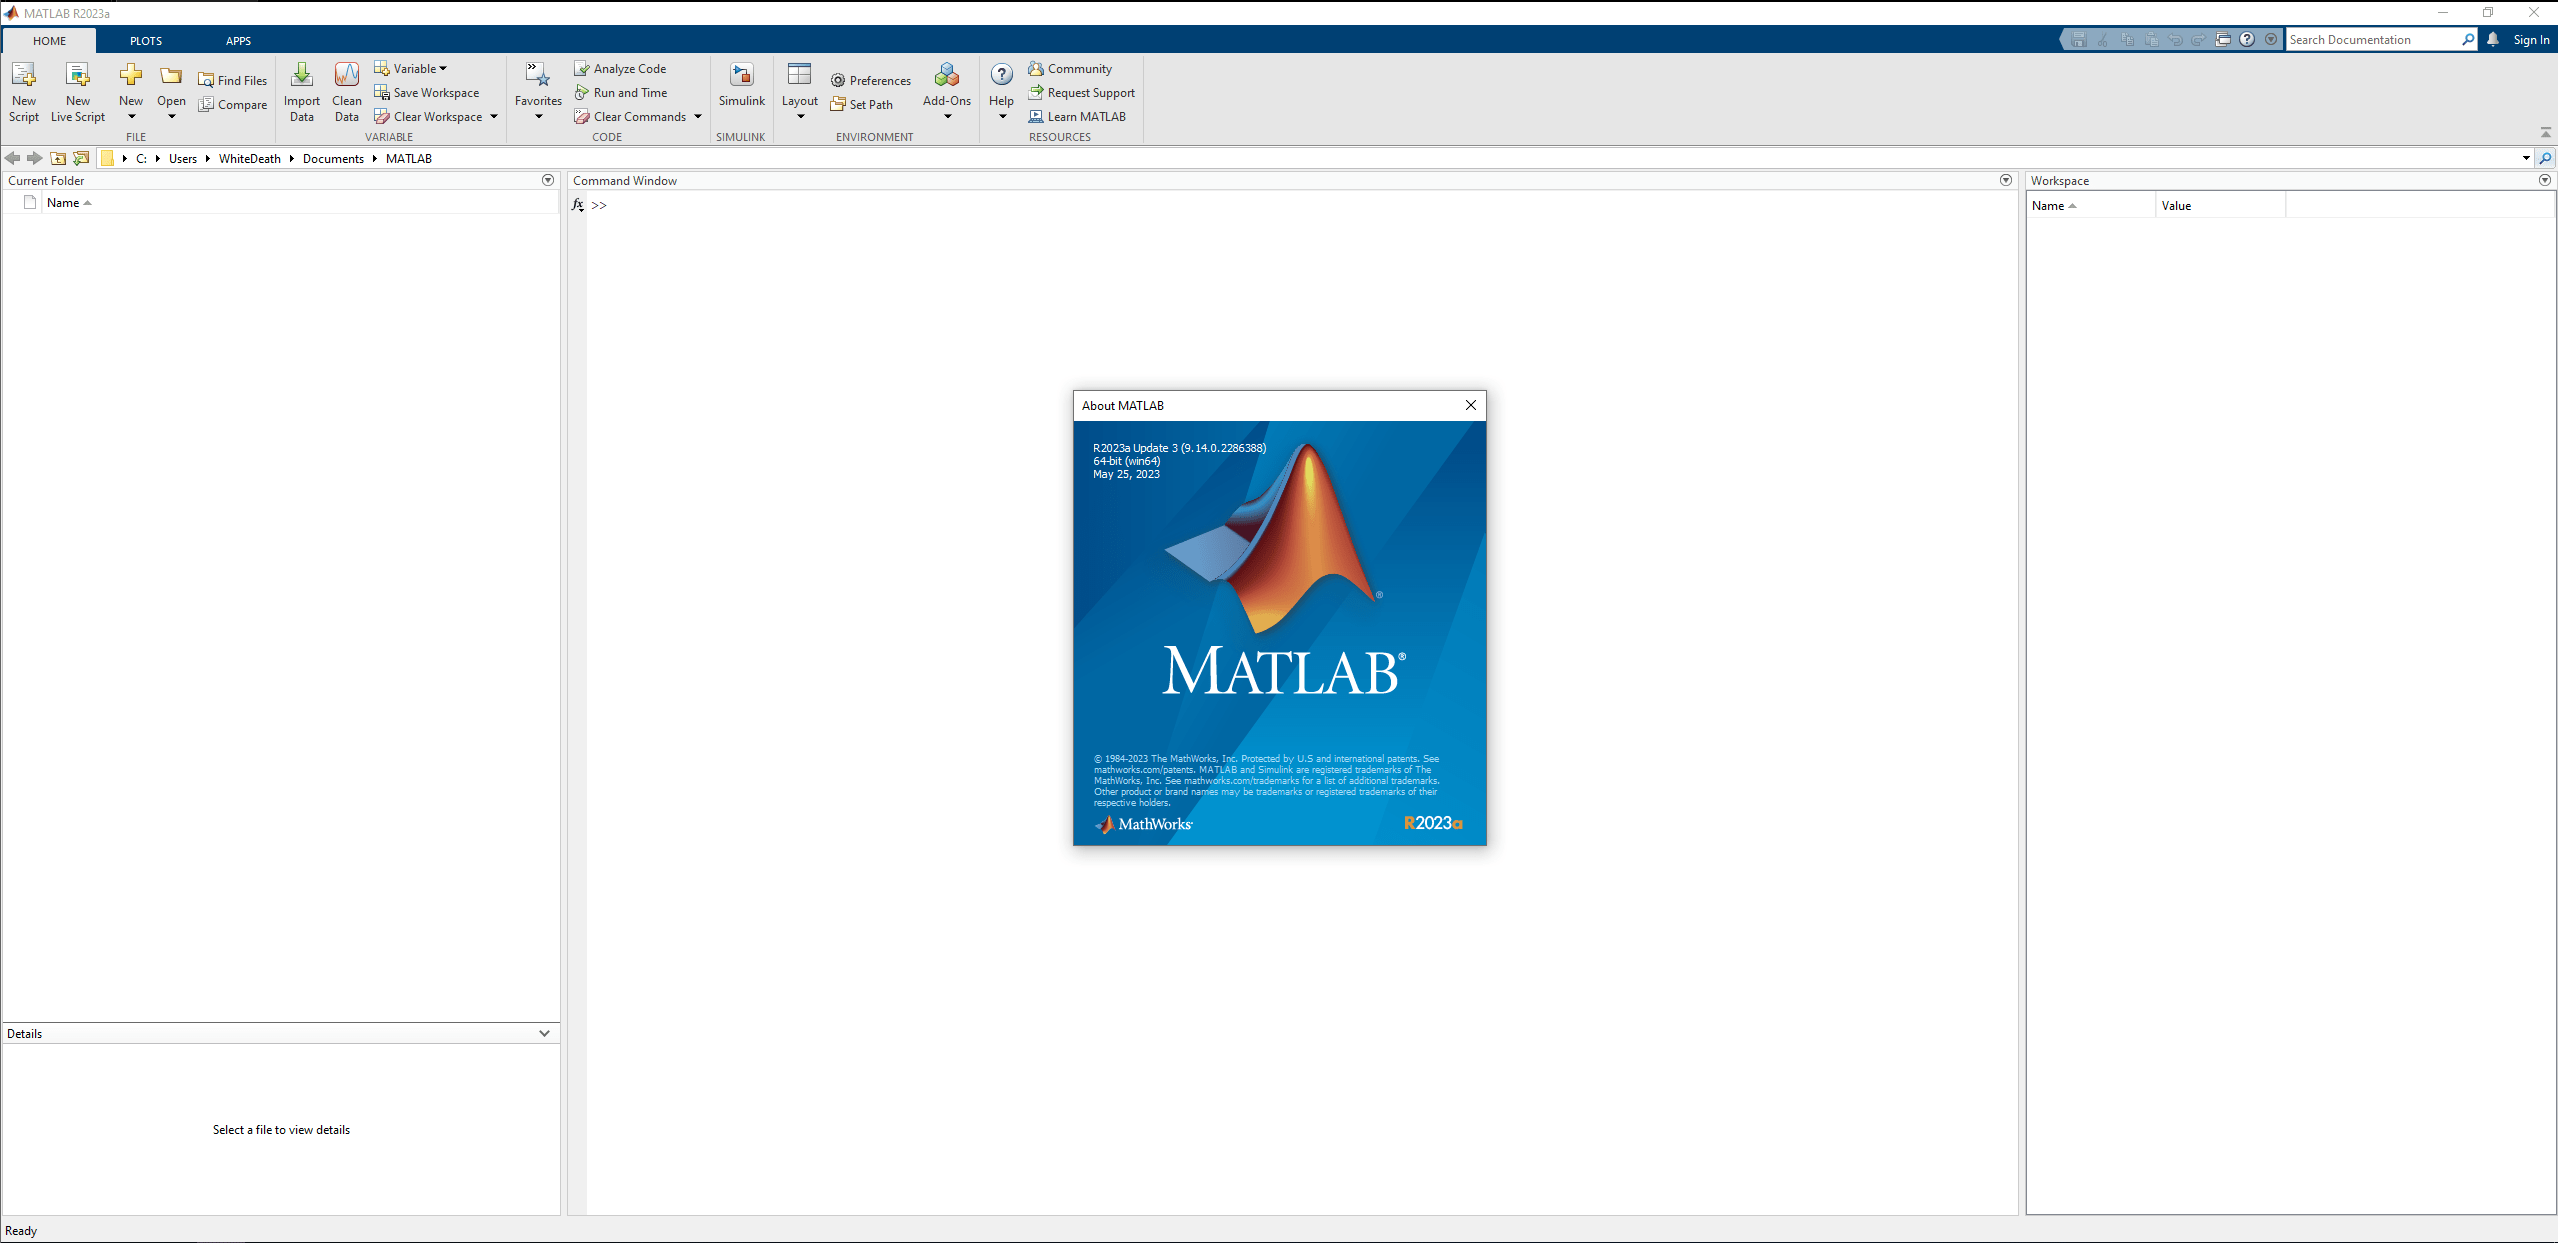 free downloads MathWorks MATLAB R2023a v9.14.0.2286388